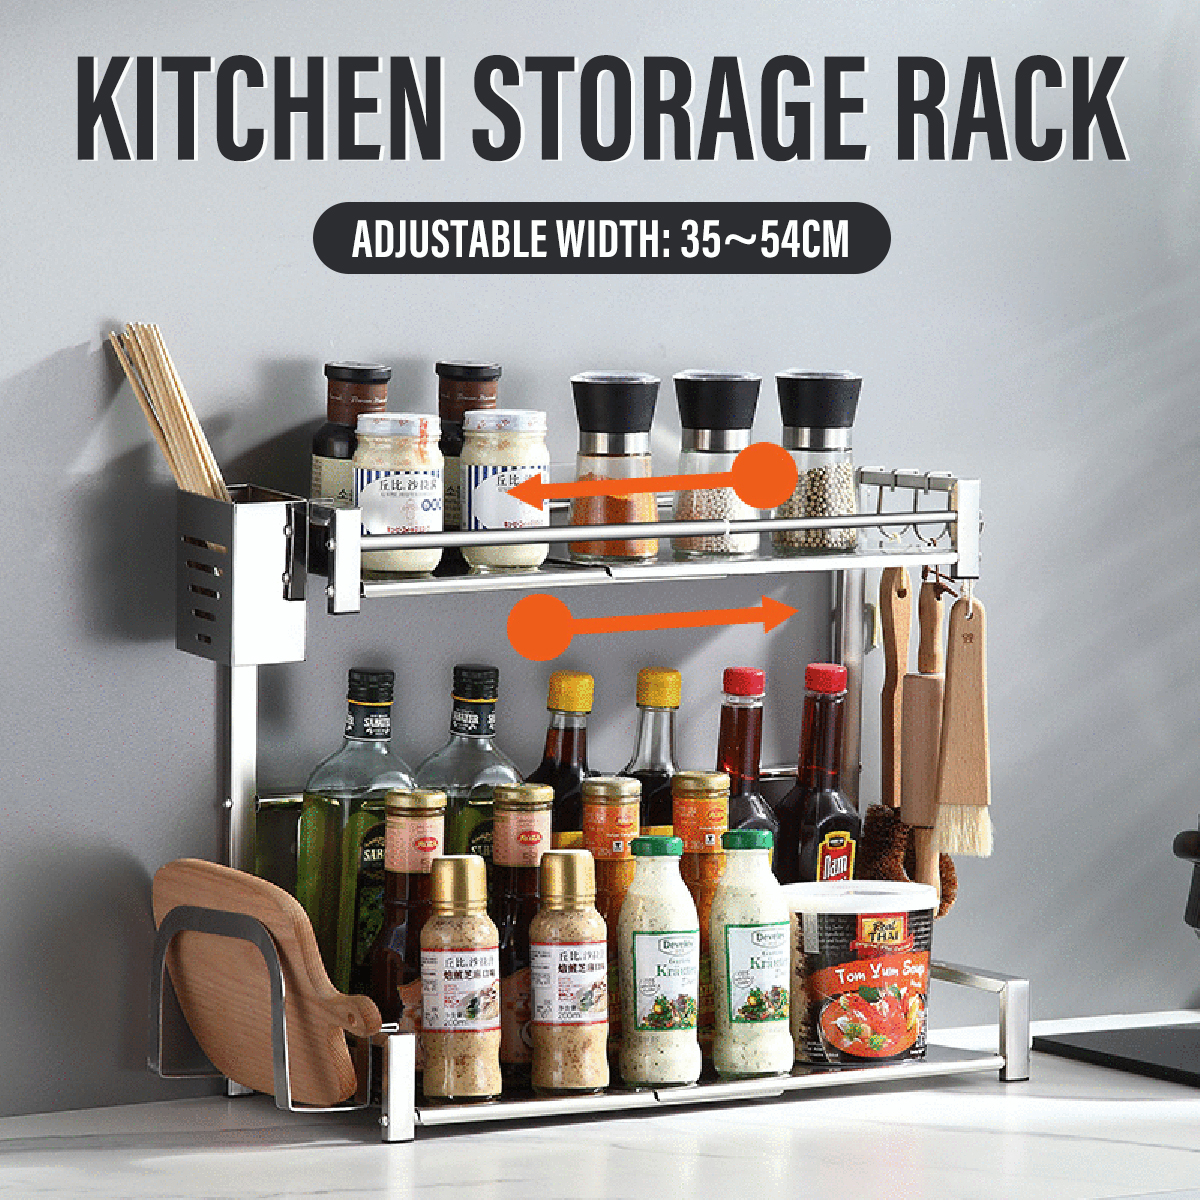 Stainless-Steel-2-Tier-Adjust-Kitchen-Spice-Rack-Storage-Shelf-Organizer-Holder-1698158-1